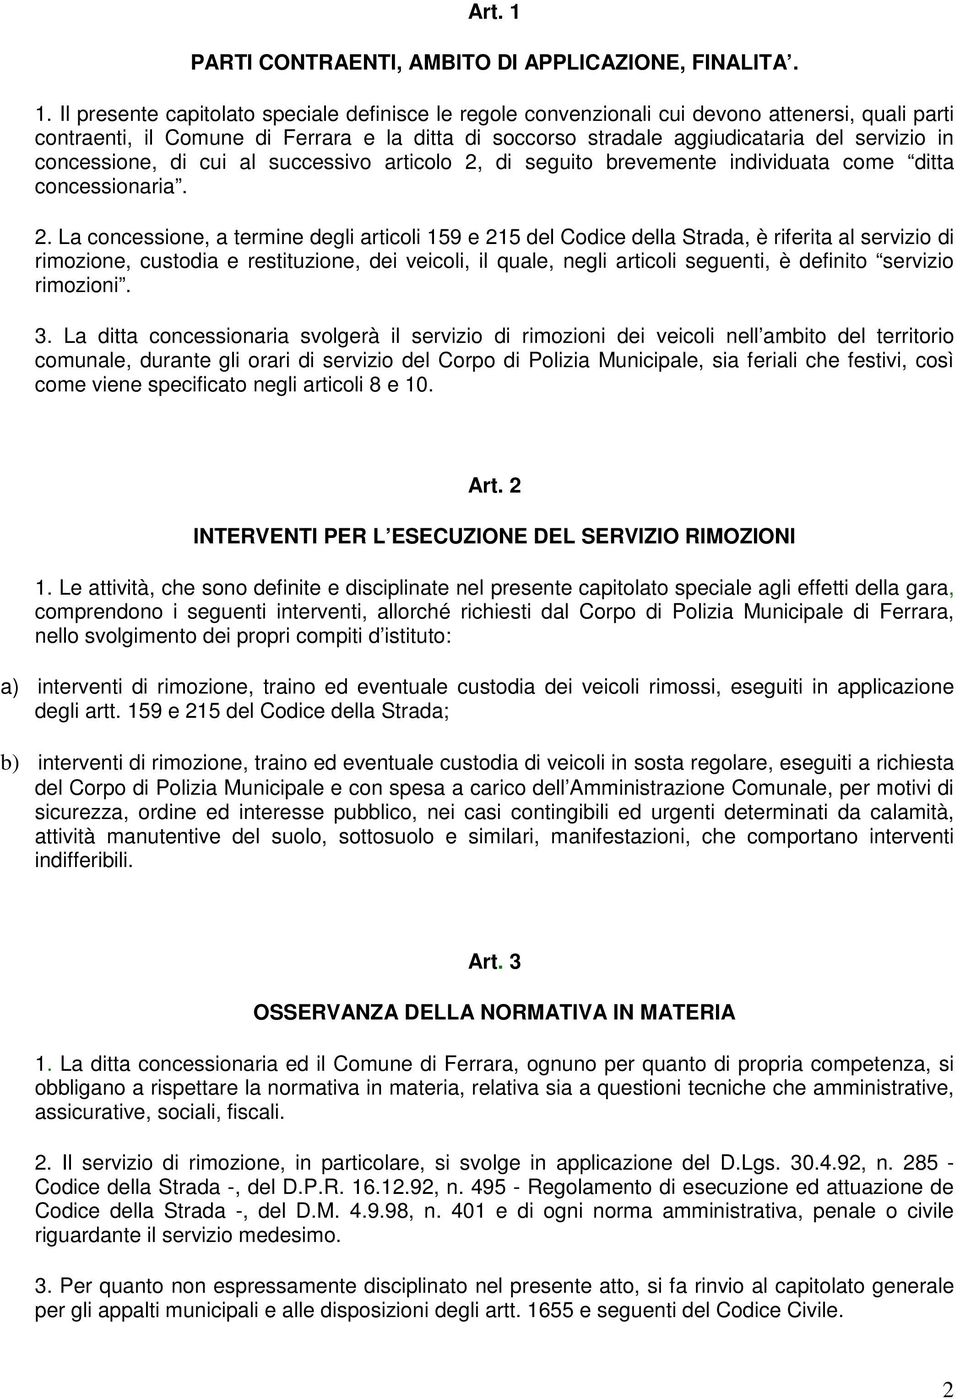 Il presente capitolato speciale definisce le regole convenzionali cui devono attenersi, quali parti contraenti, il Comune di Ferrara e la ditta di soccorso stradale aggiudicataria del servizio in